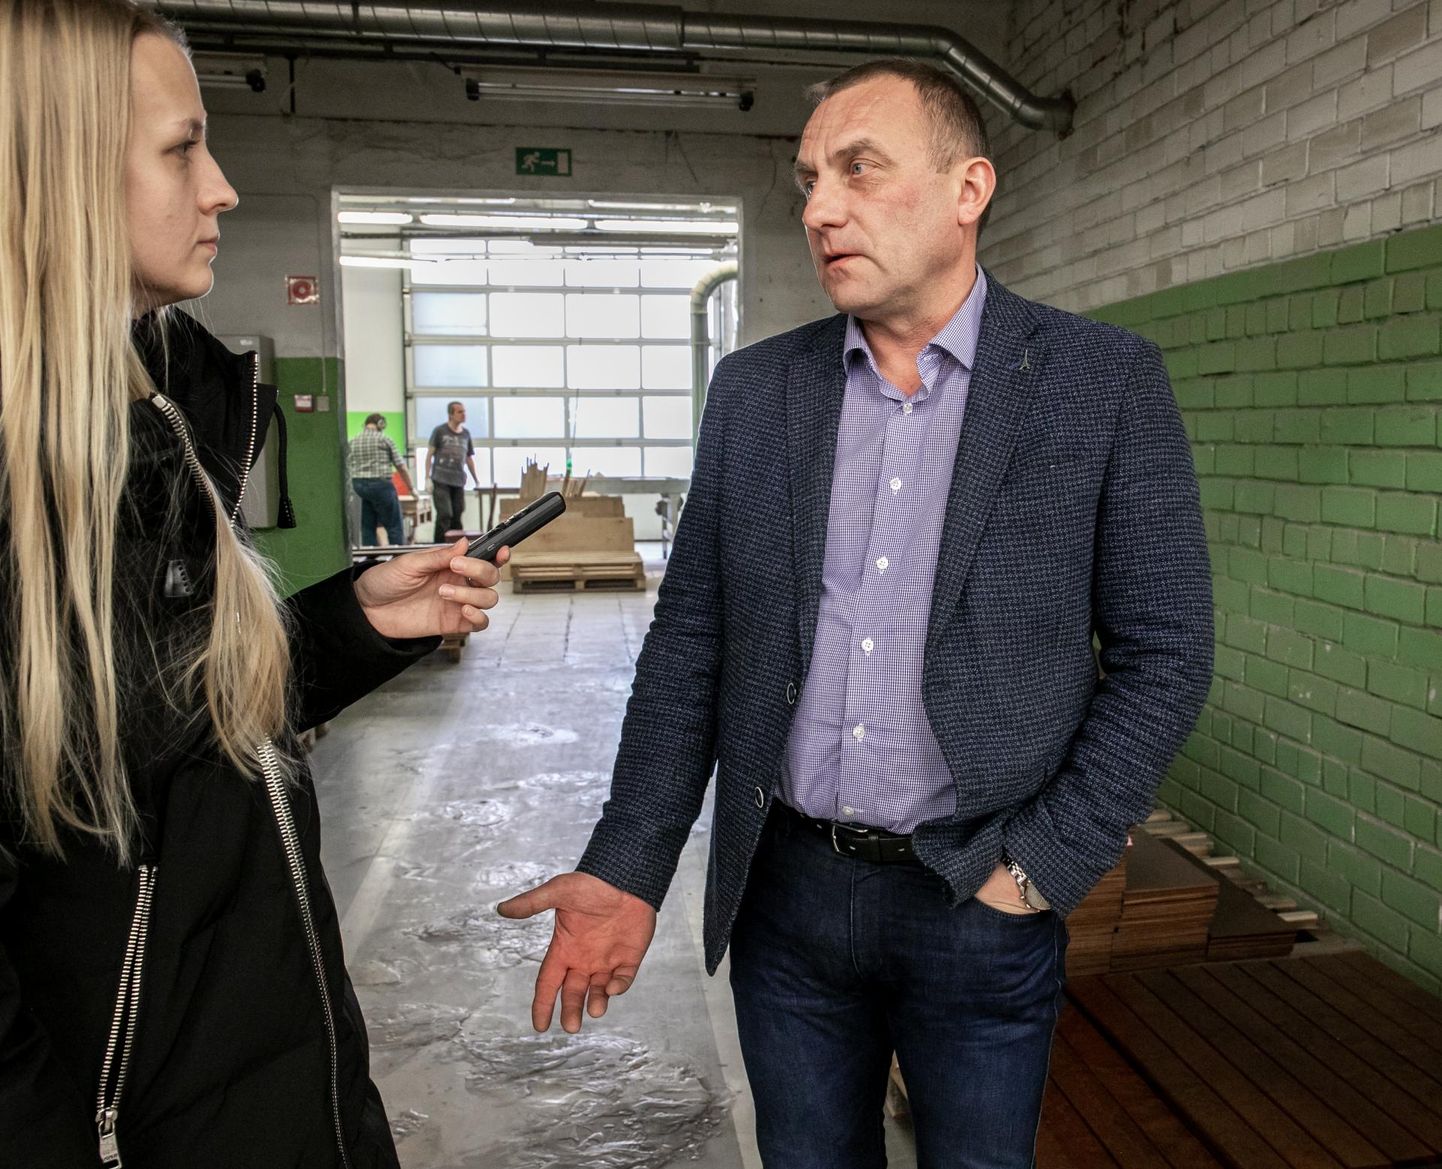 Skano mööblivabriku juht Andrus Sume ütles, et valmidus uue tehase ehituseks on olemas, kuid praegu ehitustööde alustamisega ei kiirustata.